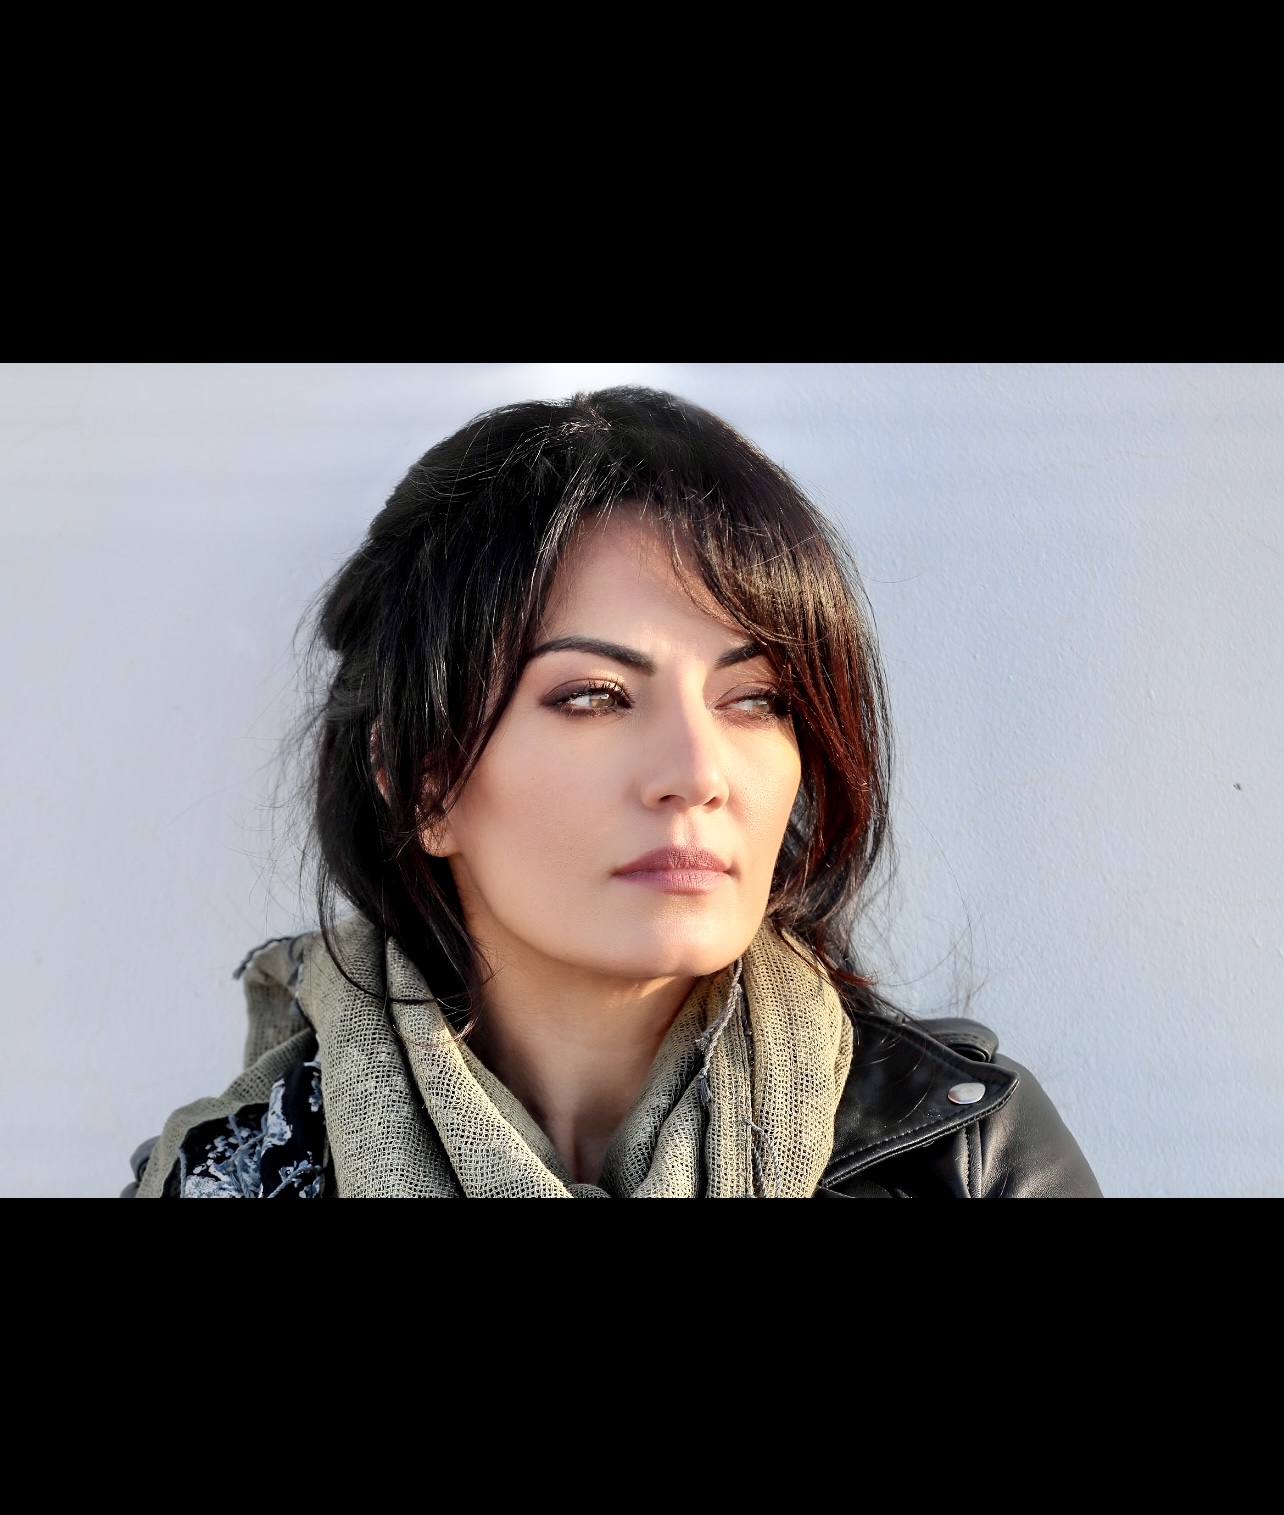 Entretien avec la réalisatrice Maryam Touzani, une femme portant une veste en cuir et un foulard.